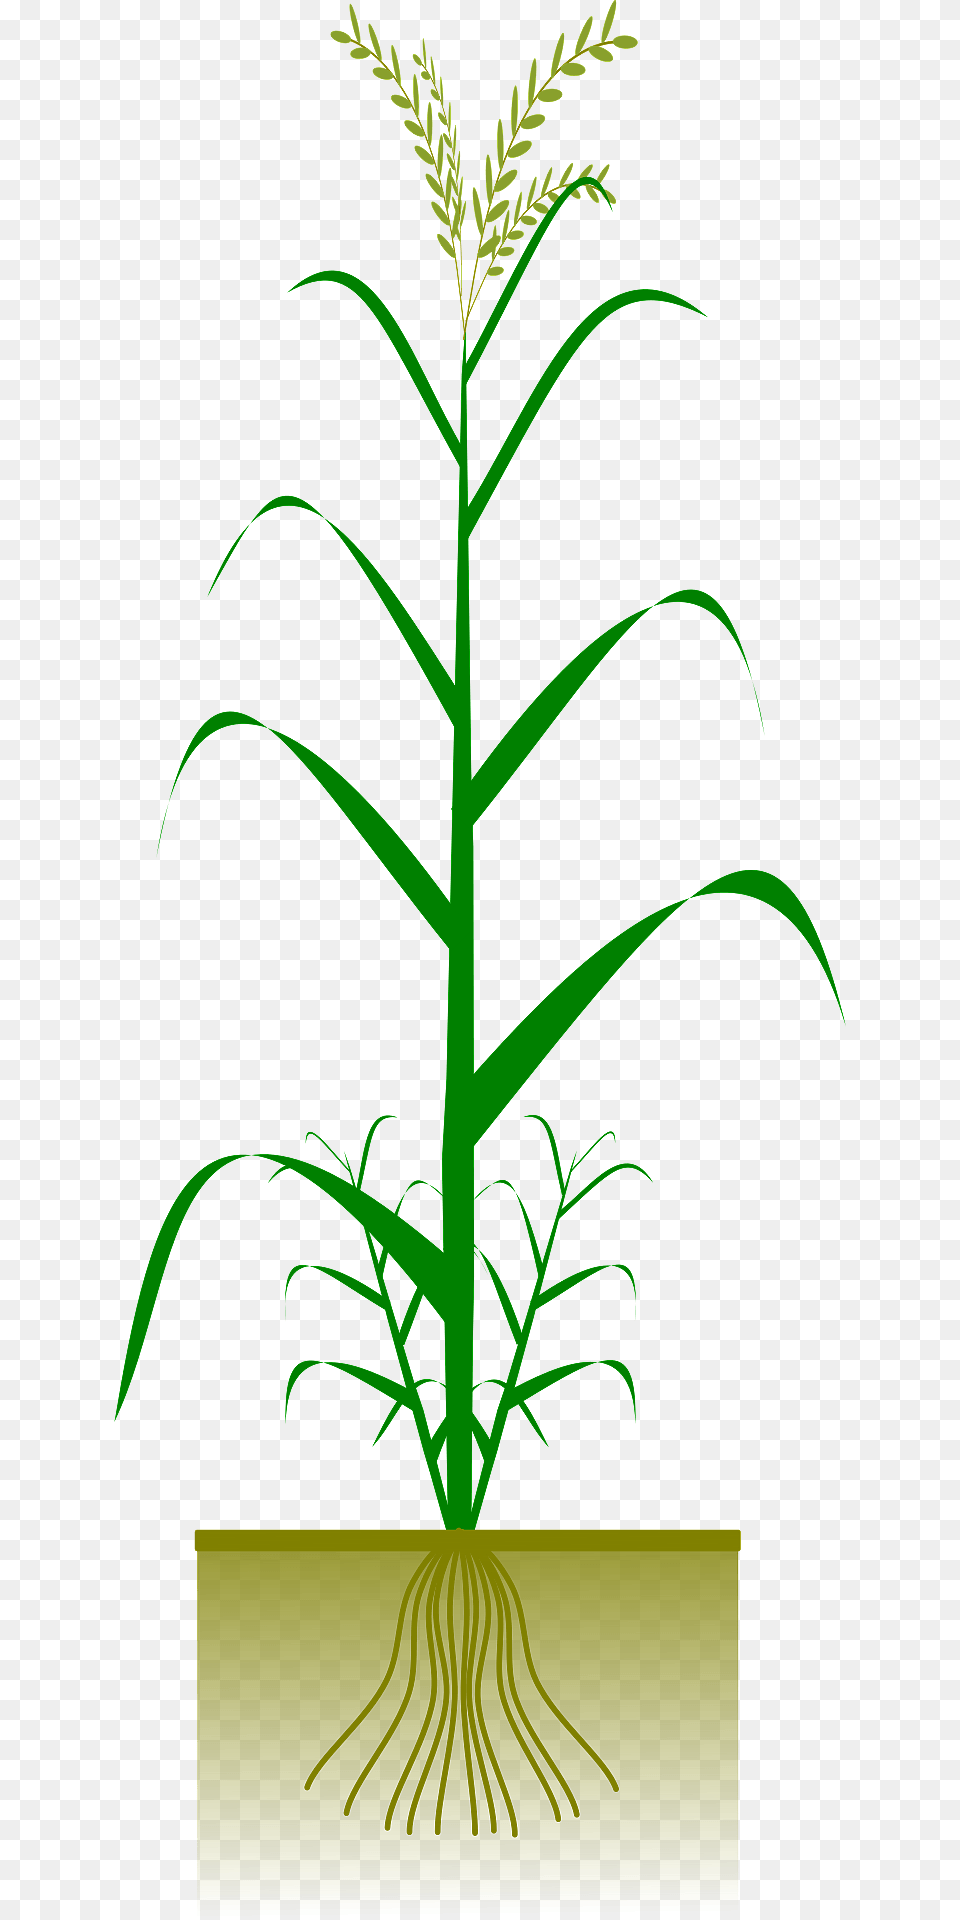 Cereal Plant Clipart, Grass, Vegetation, Leaf, Green Free Png Download